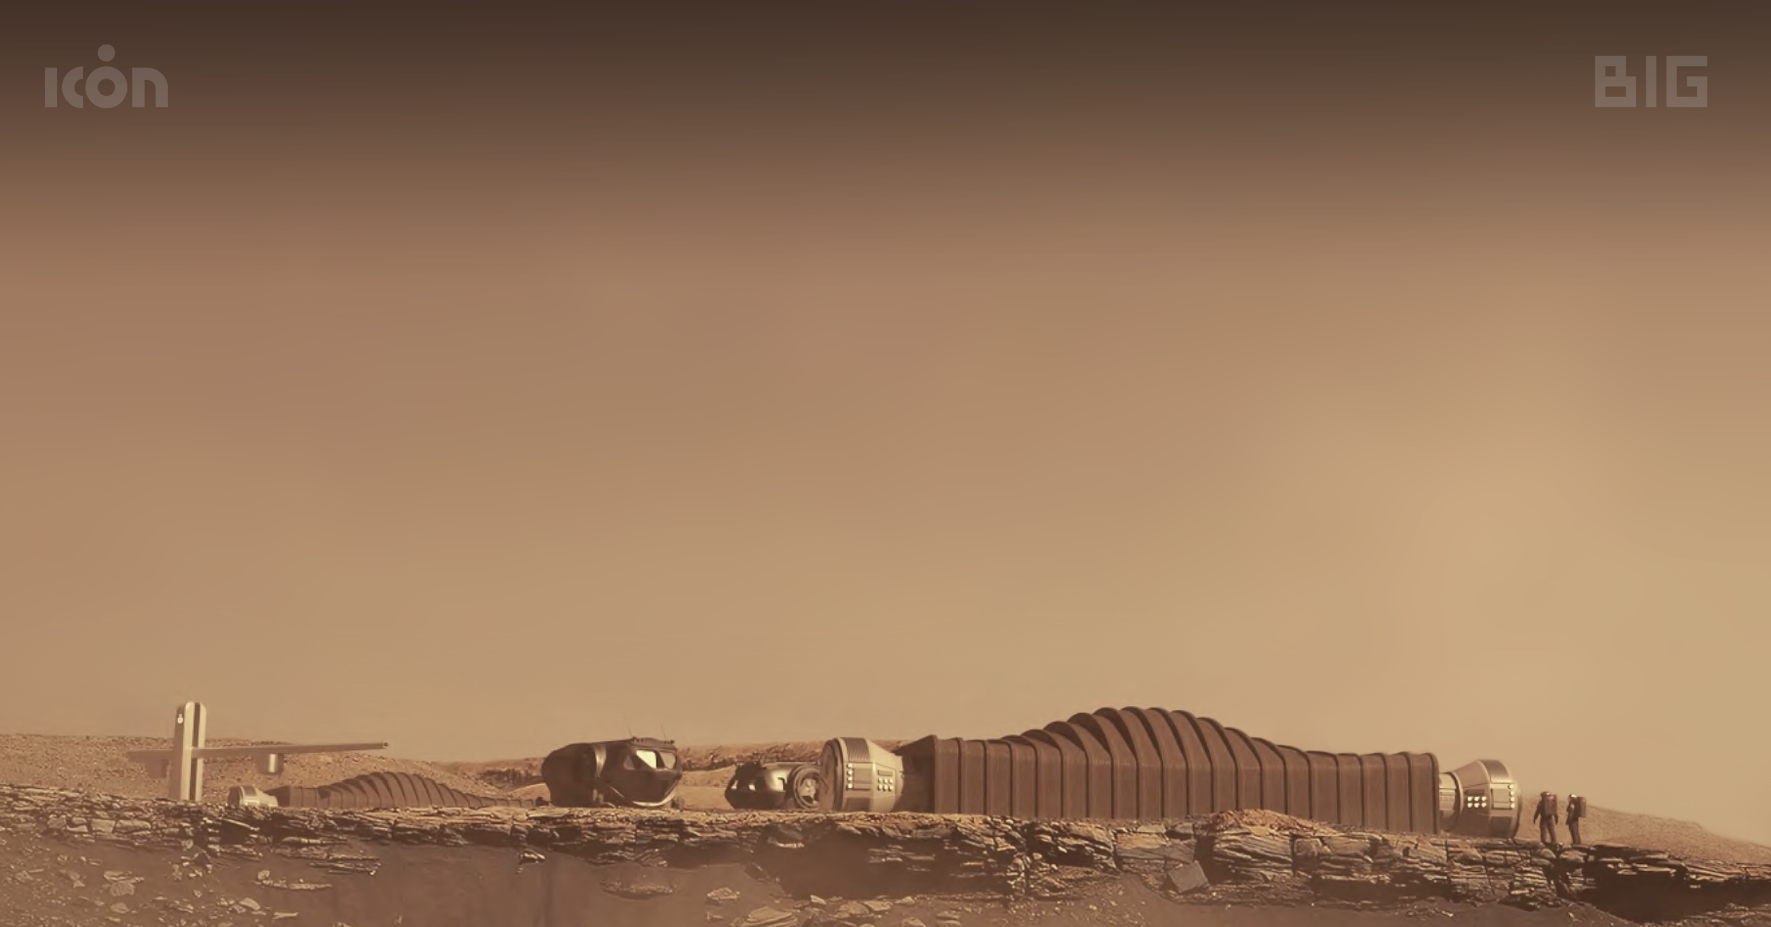 Plazo para inscripción en misión marciana simulada de la NASA concluye en abril